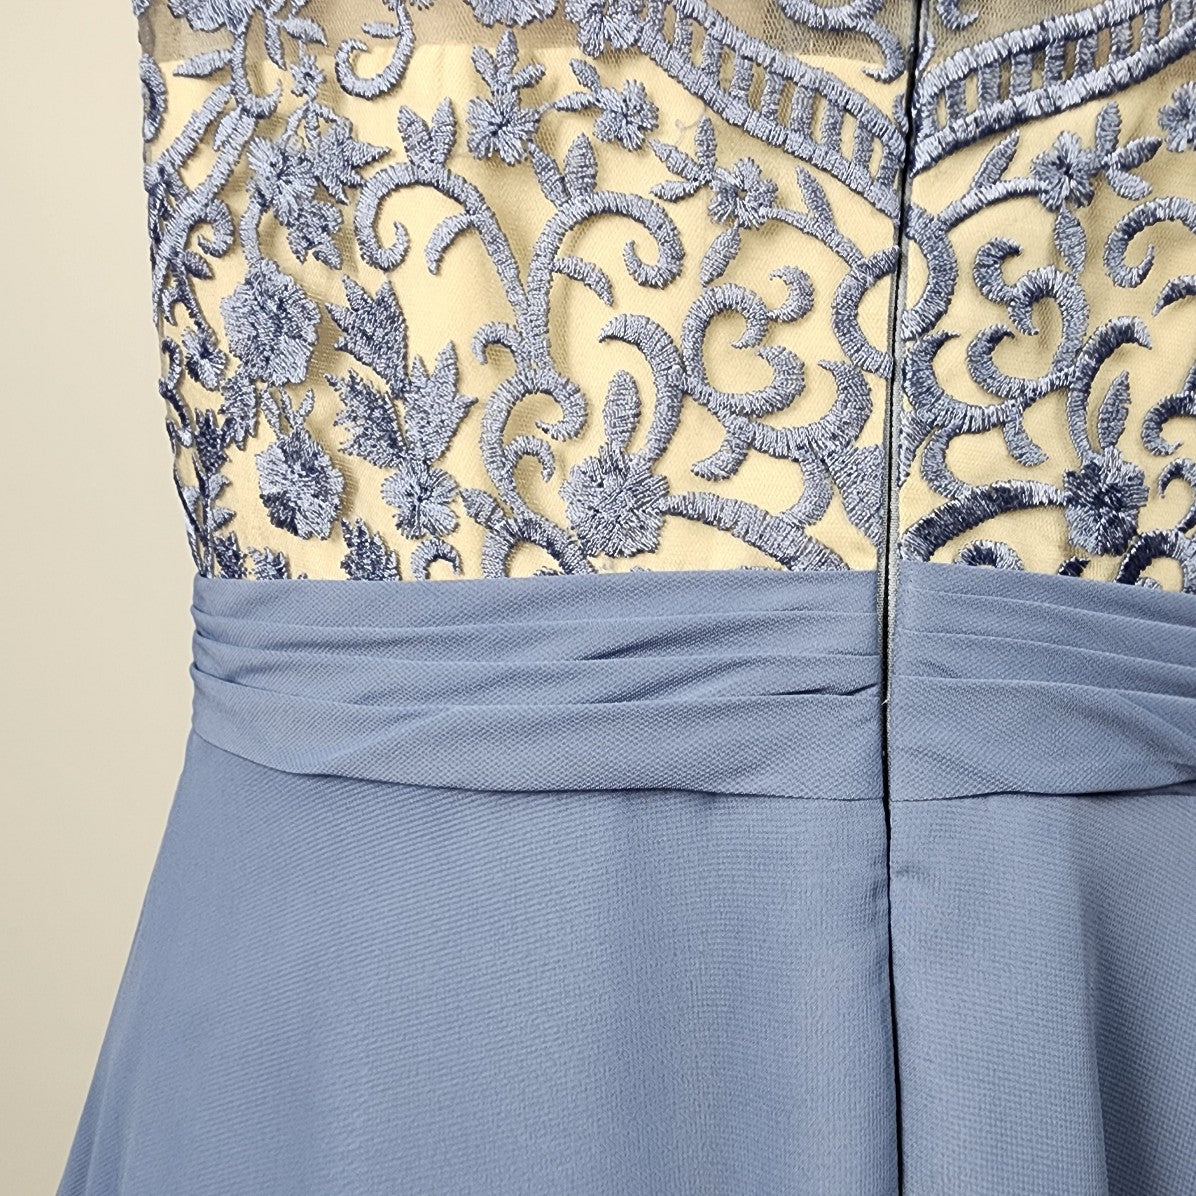 JJ'S House Blue Lace Illusion Neckline Bridesmaid Event Gown Size 2XL